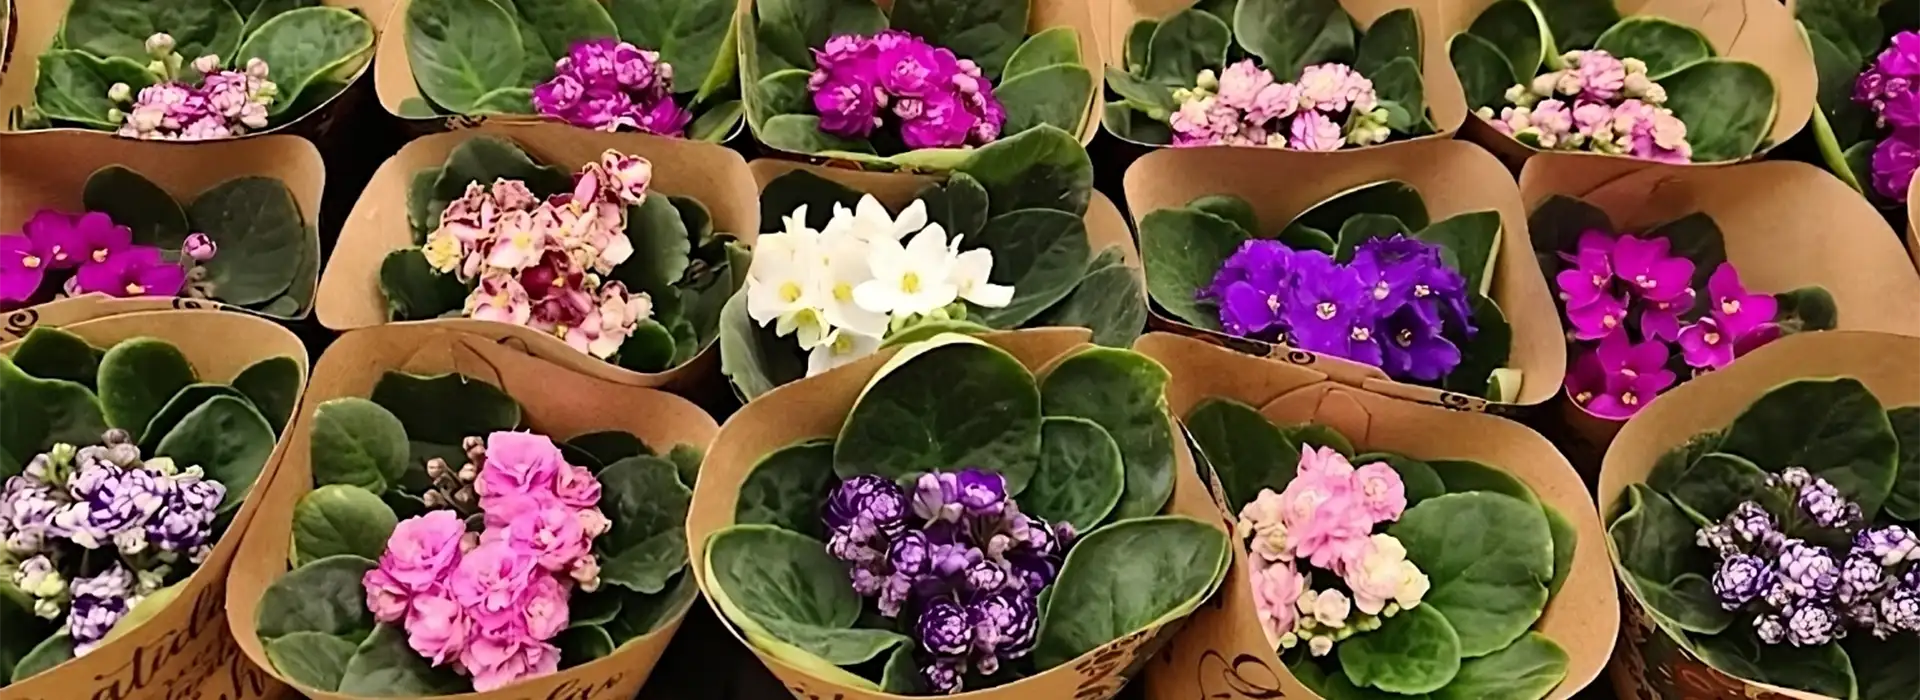 Vasos de violeta a venda no interior da loja Pronta Flora em Holambra.